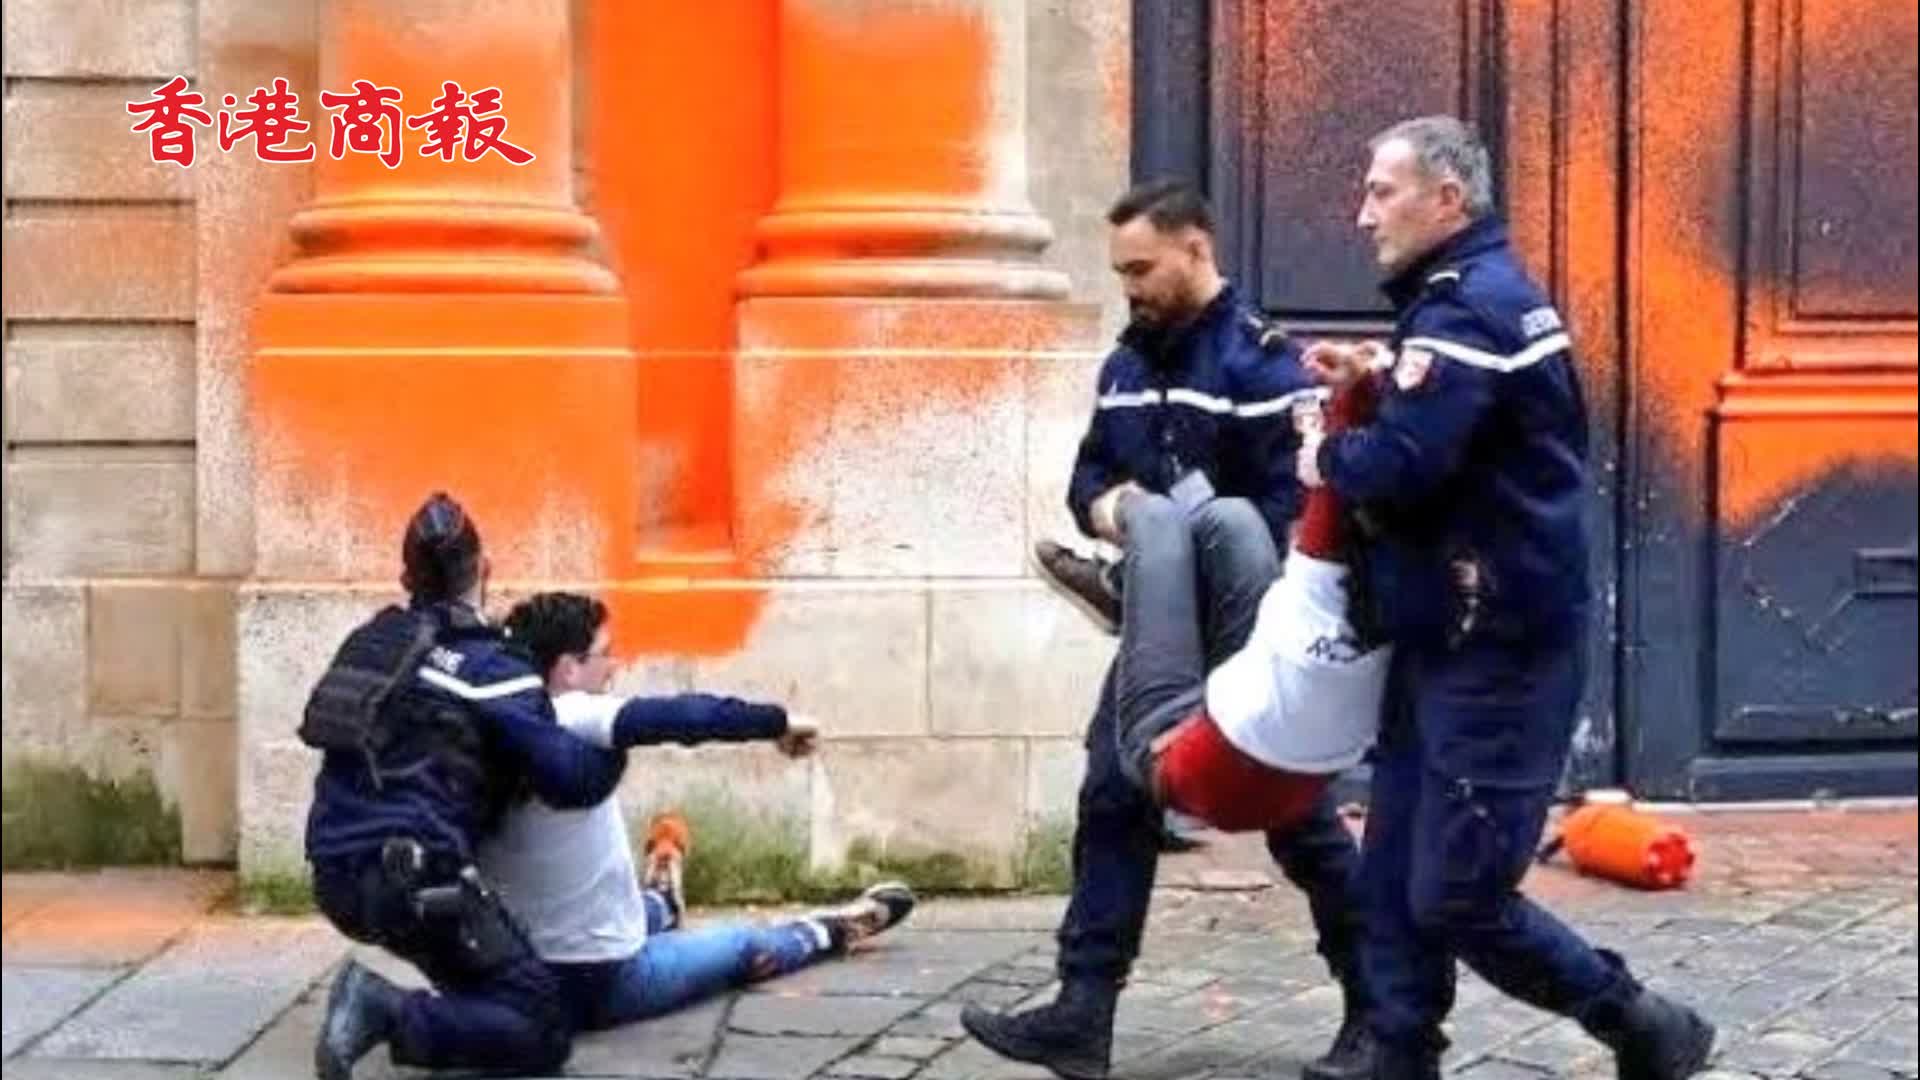 有片丨兩名氣候人士因在法國總理府門口噴漆抗議被捕